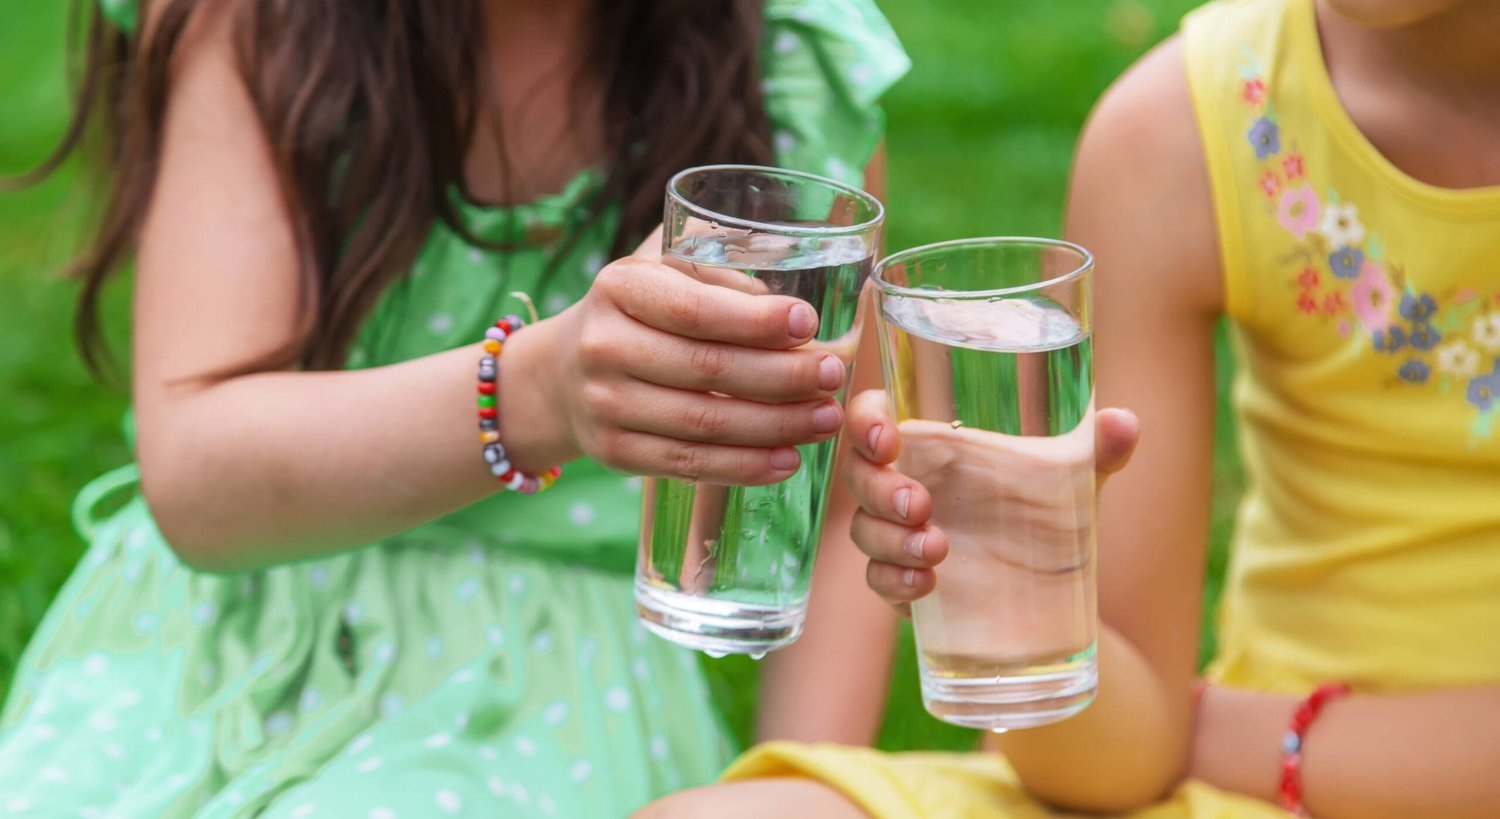 الفلورايد الزائد في الماء يُضعف الإدراك عند الأطفال